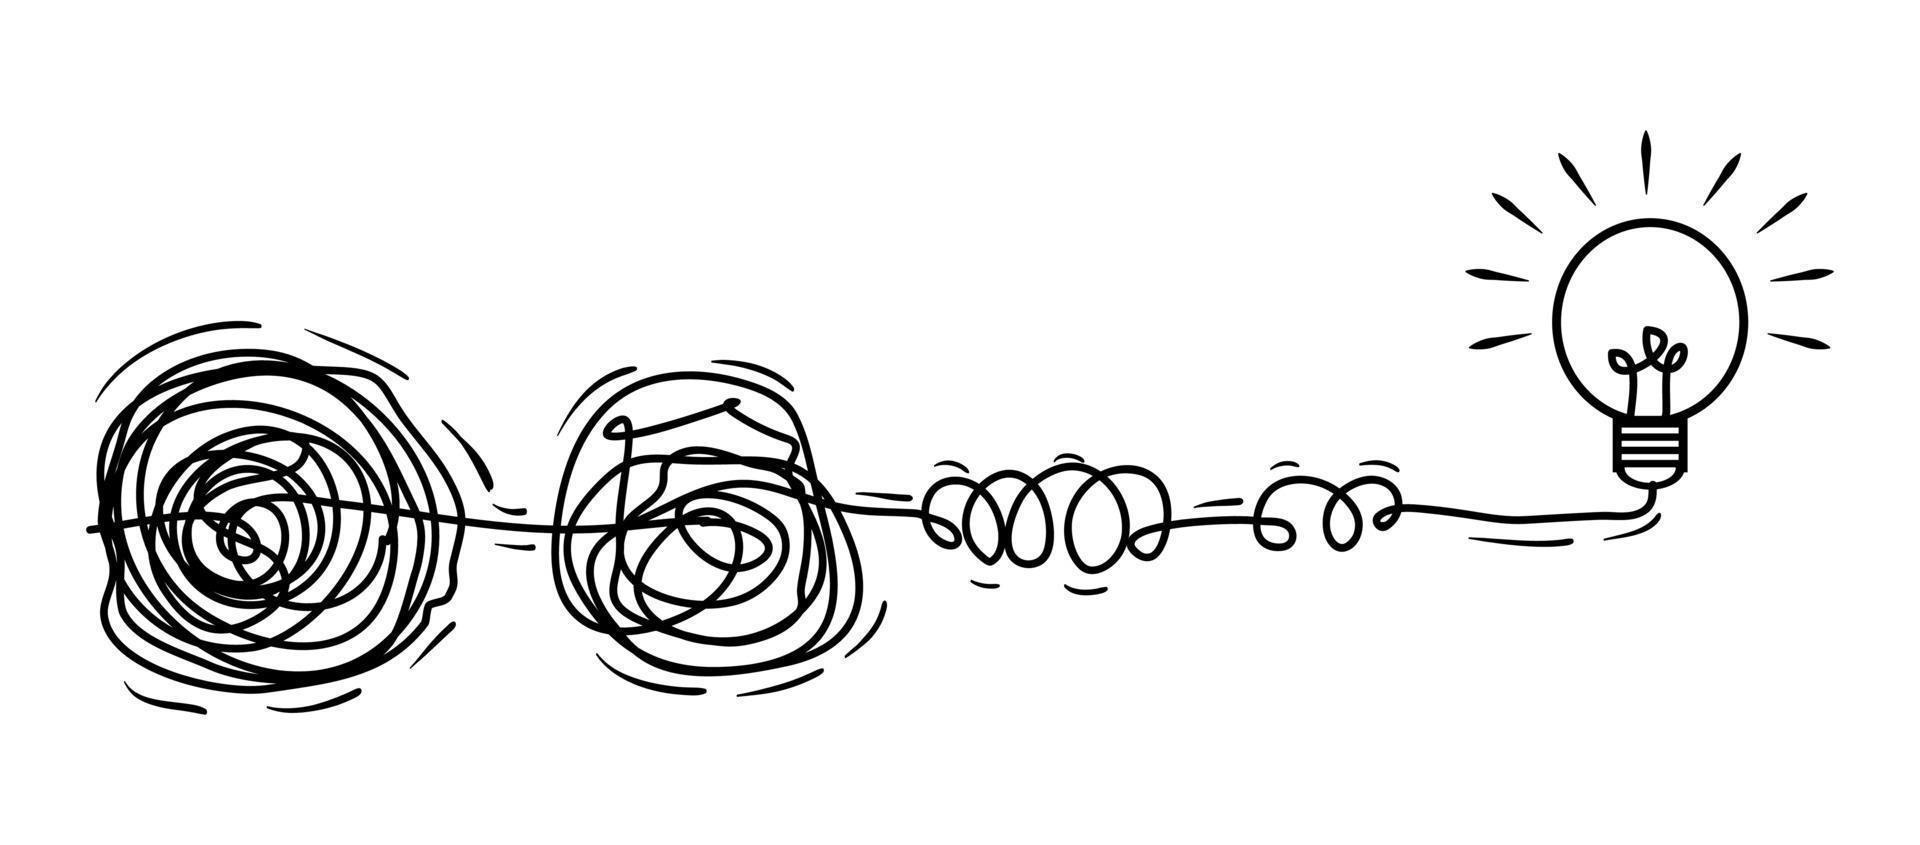 garabatos de líneas de garabatos. el concepto de transición de complicado a simple con lámpara de bombilla, aislado en fondo blanco. ilustraciones vectoriales vector